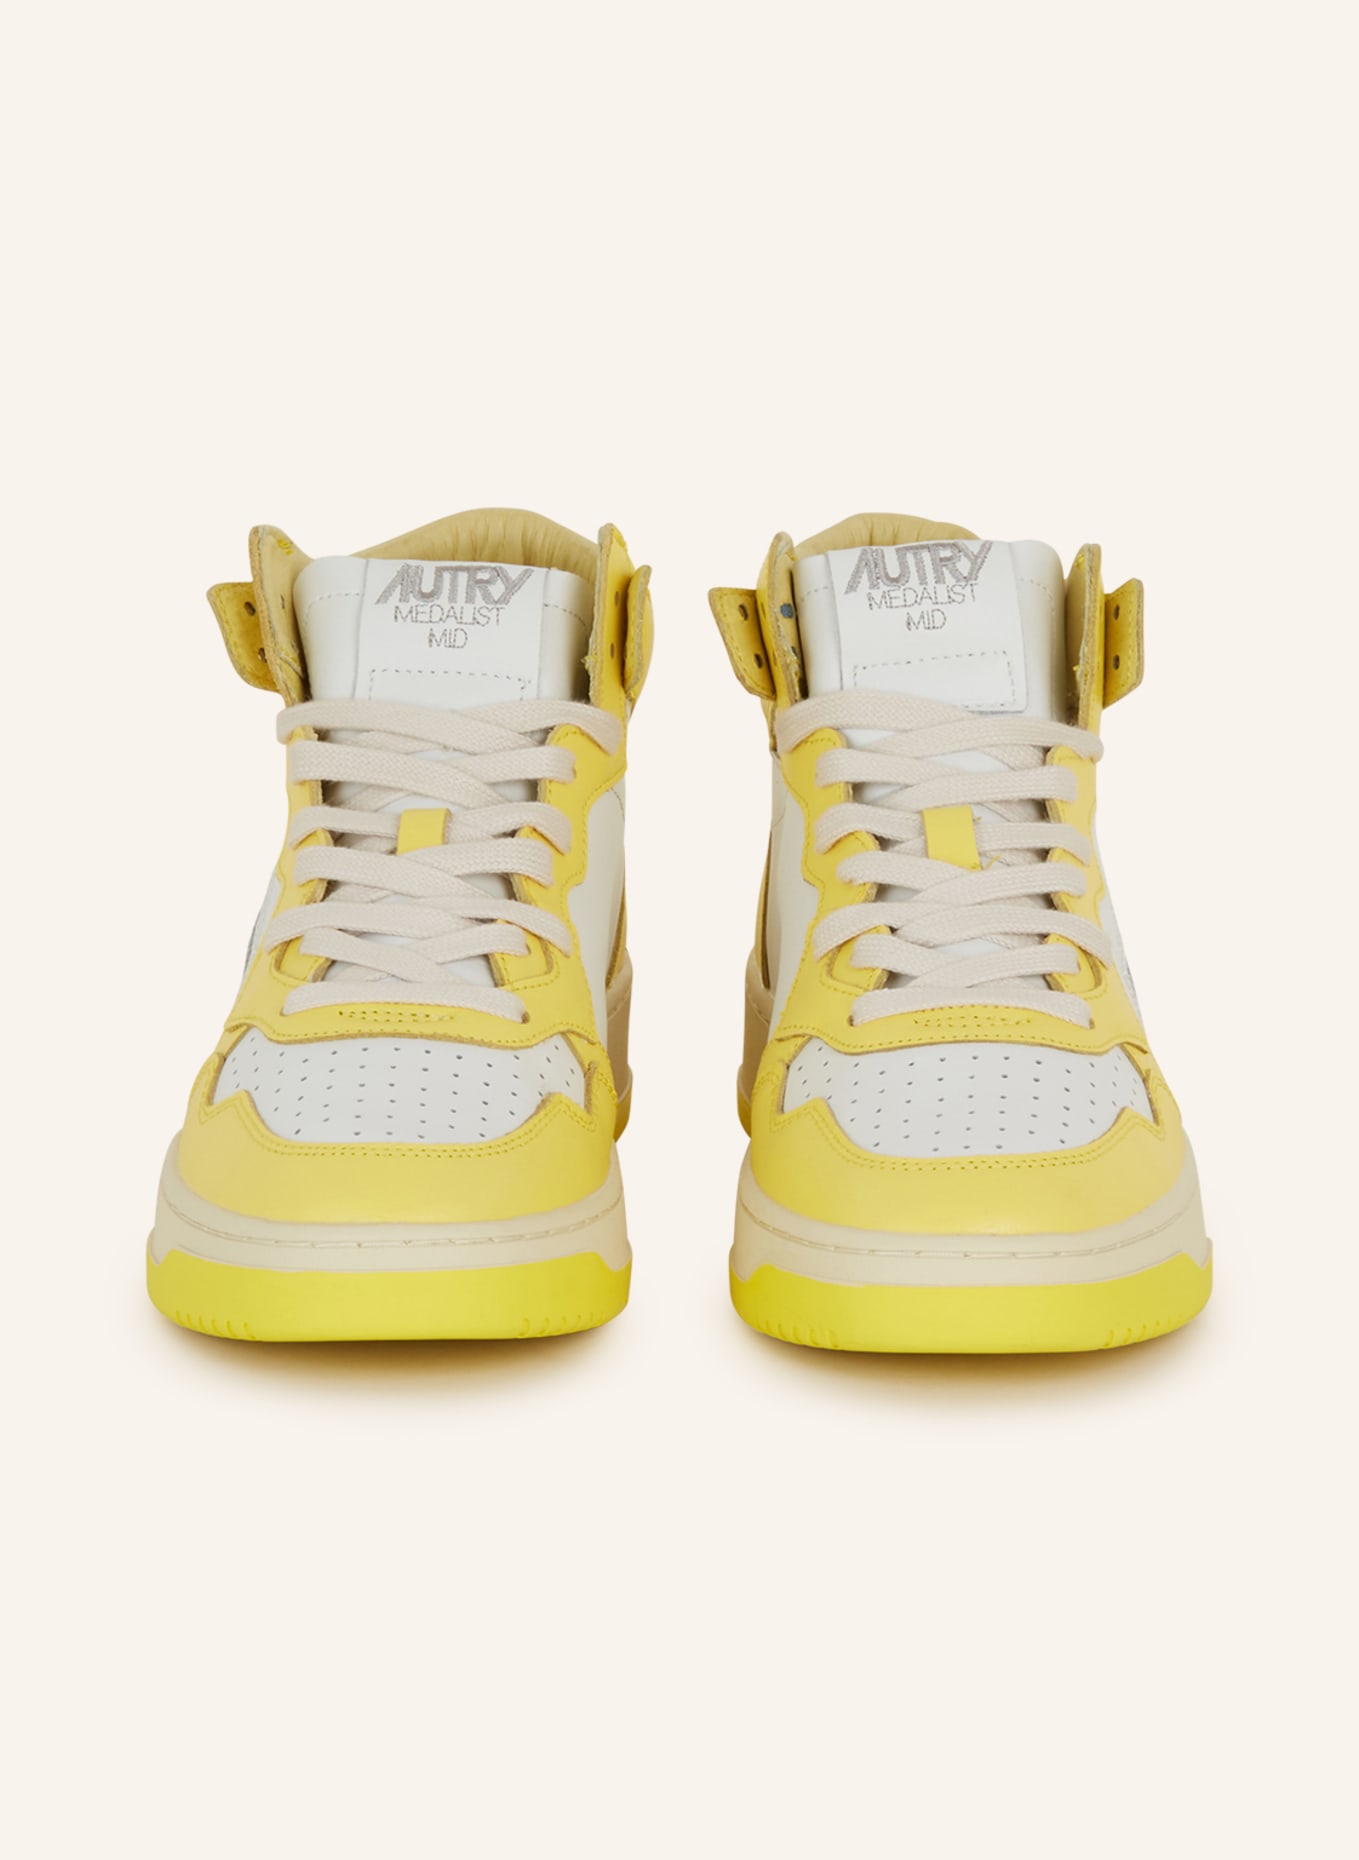 AUTRY Hightop-Sneaker MEDALIST, Farbe: GELB/ WEISS (Bild 3)